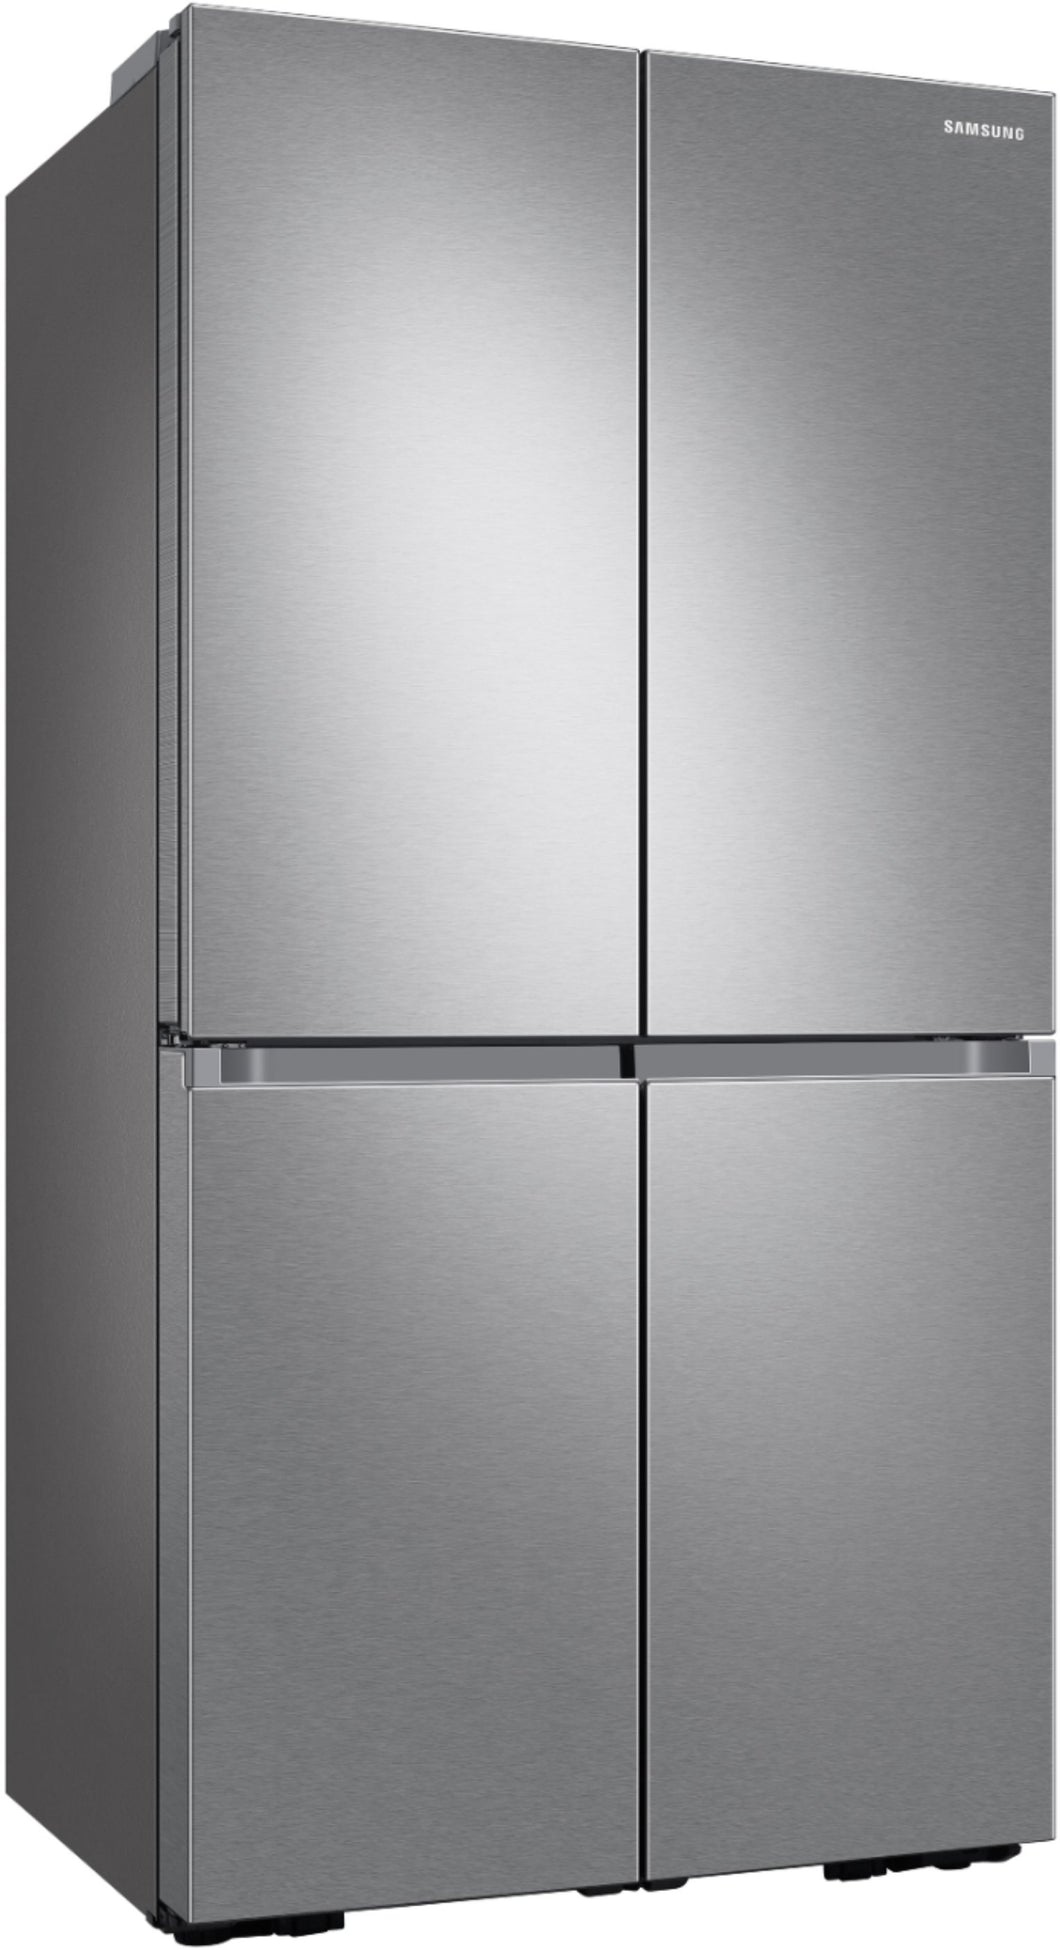 Samsung RF23A9671SR Smart Counter Depth 4-Door Flex Refrigerator - Stainless